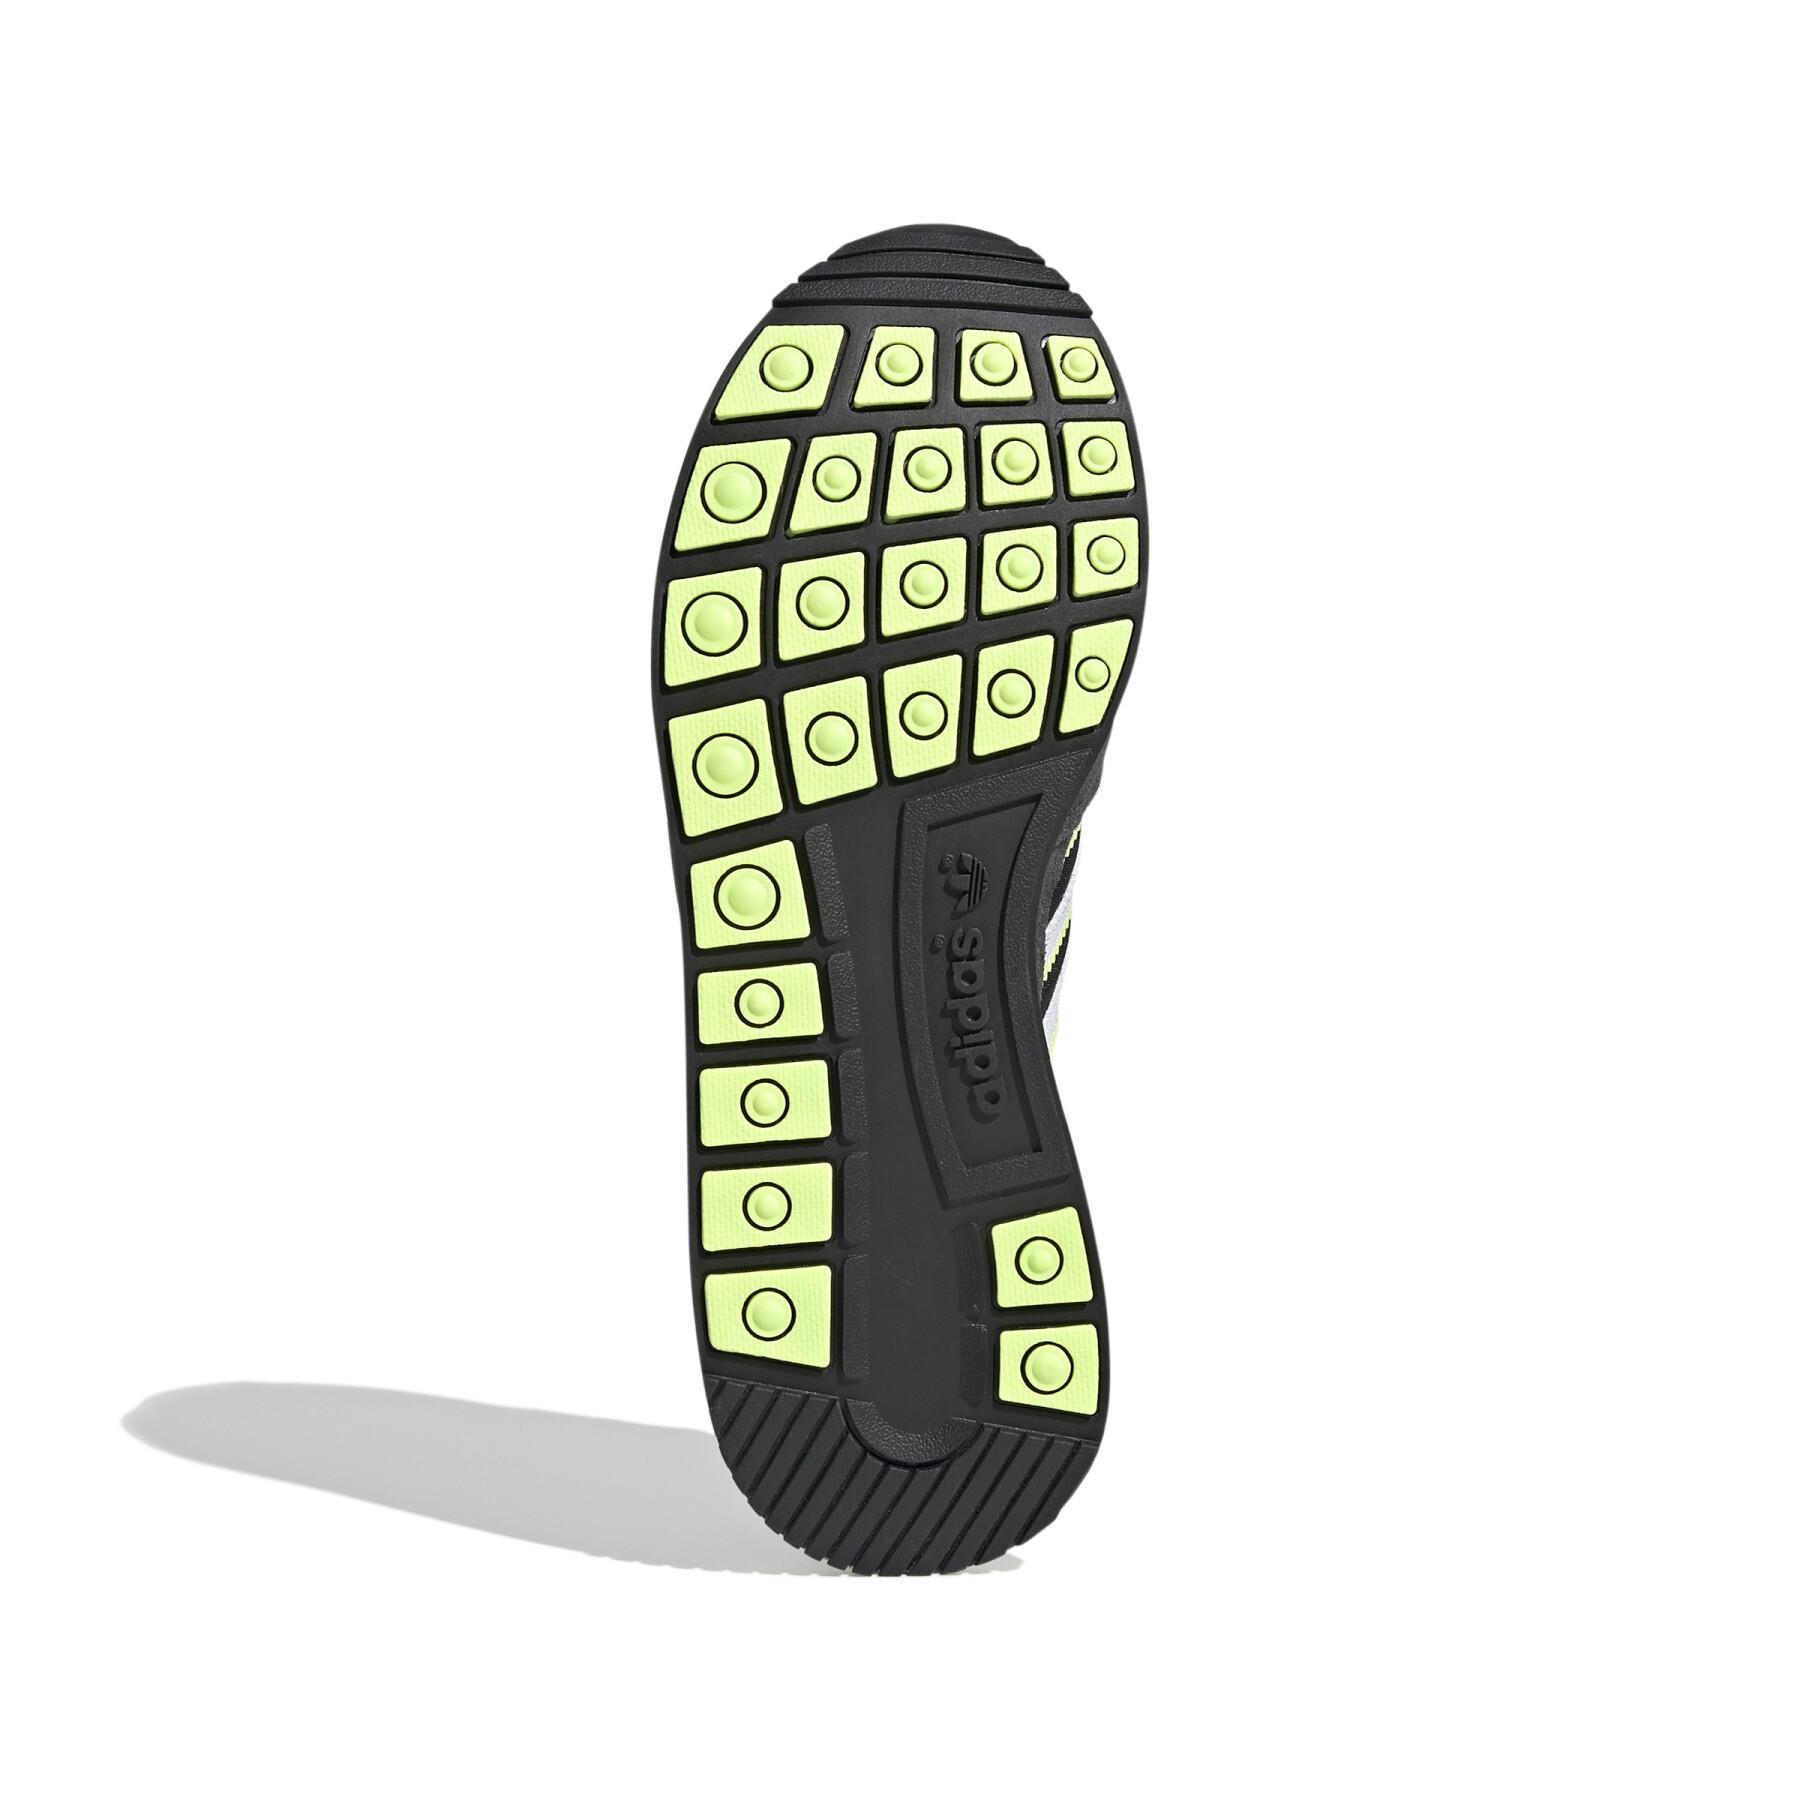 Zapatillas de deporte para mujeres adidas Originals ZX 500